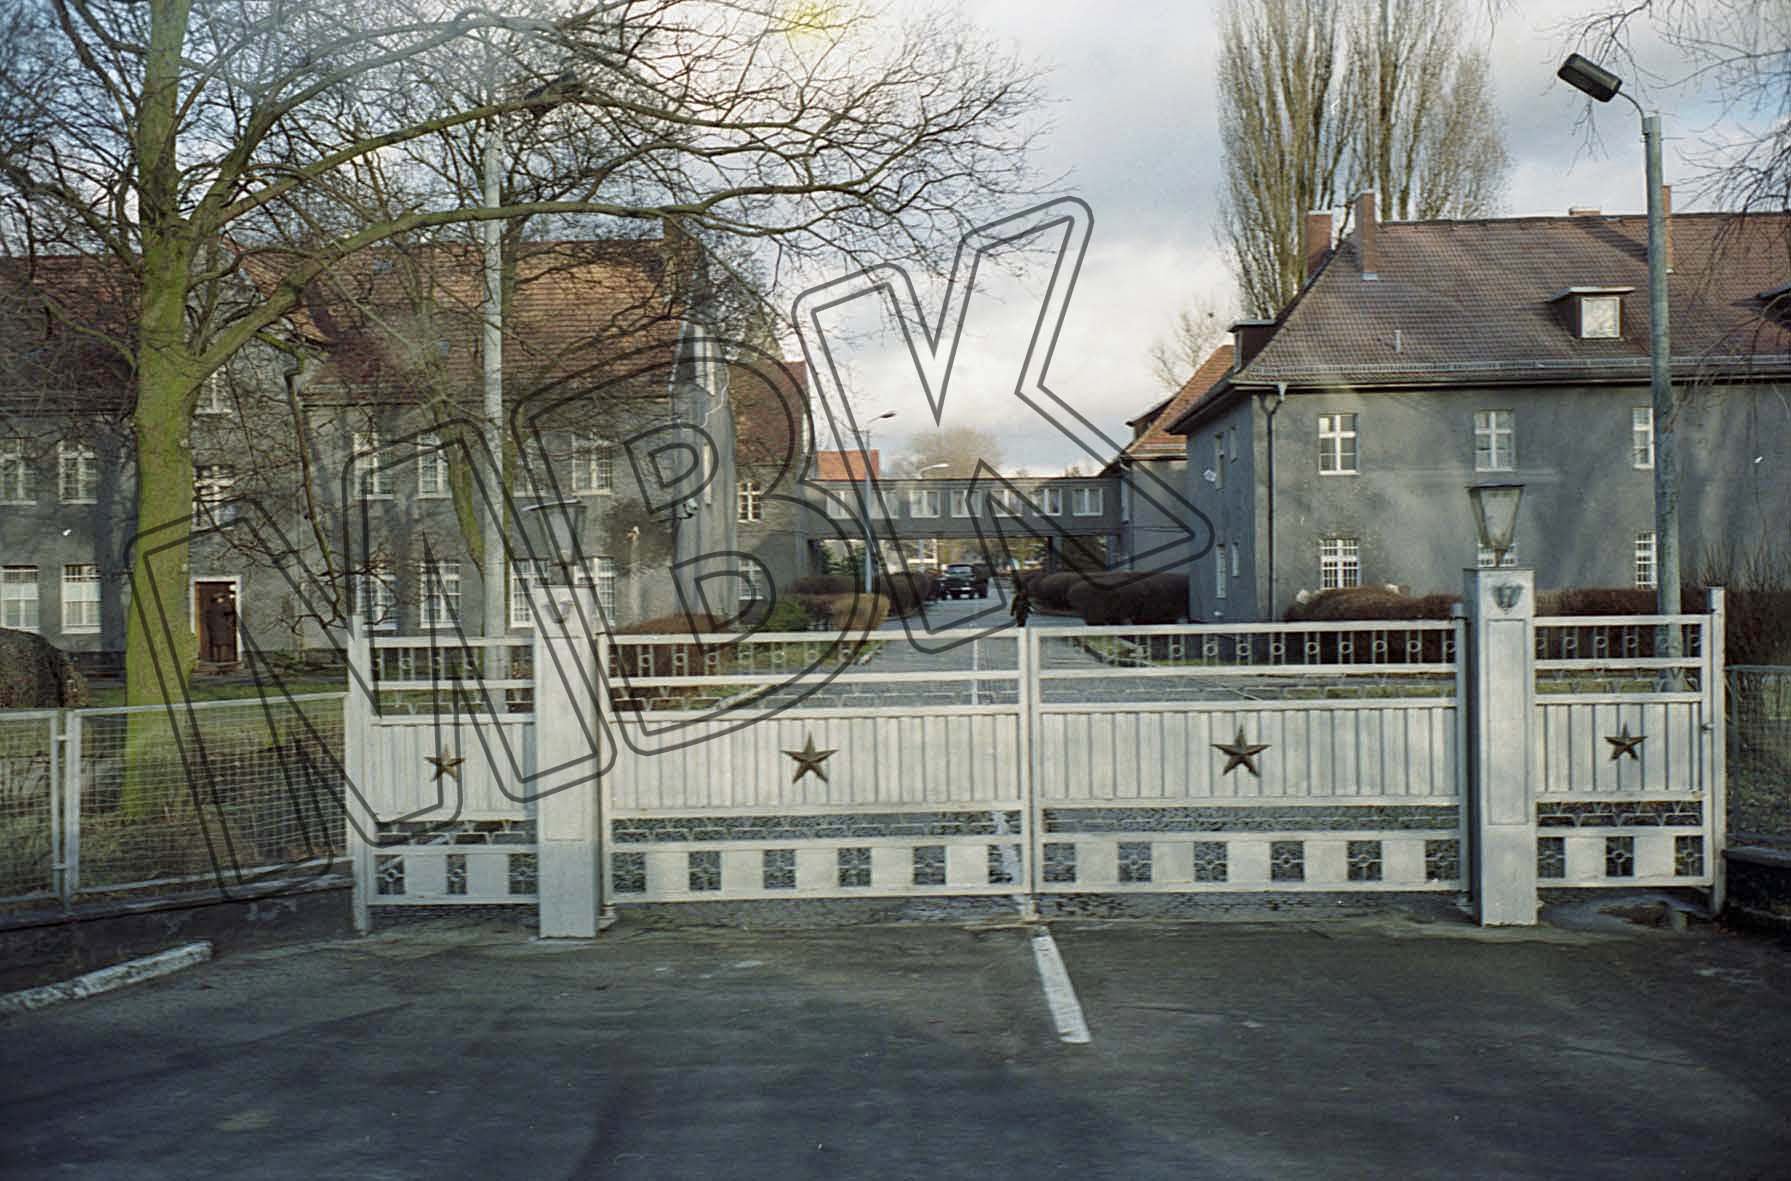 Fotografie: Tor mit Zufahrt zum Stabsgebäude, Wünsdorf, 1994 (Museum Berlin-Karlshorst RR-P)